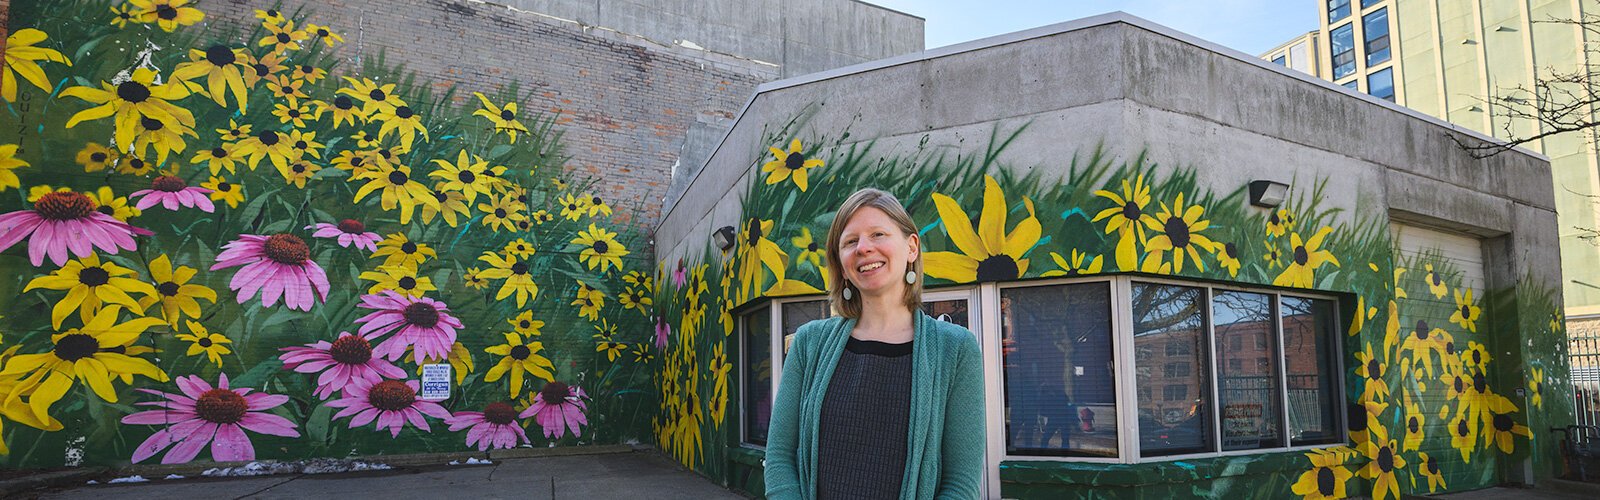 Hannah Kirkpatrick in front of Ouizi's "Drift" mural.